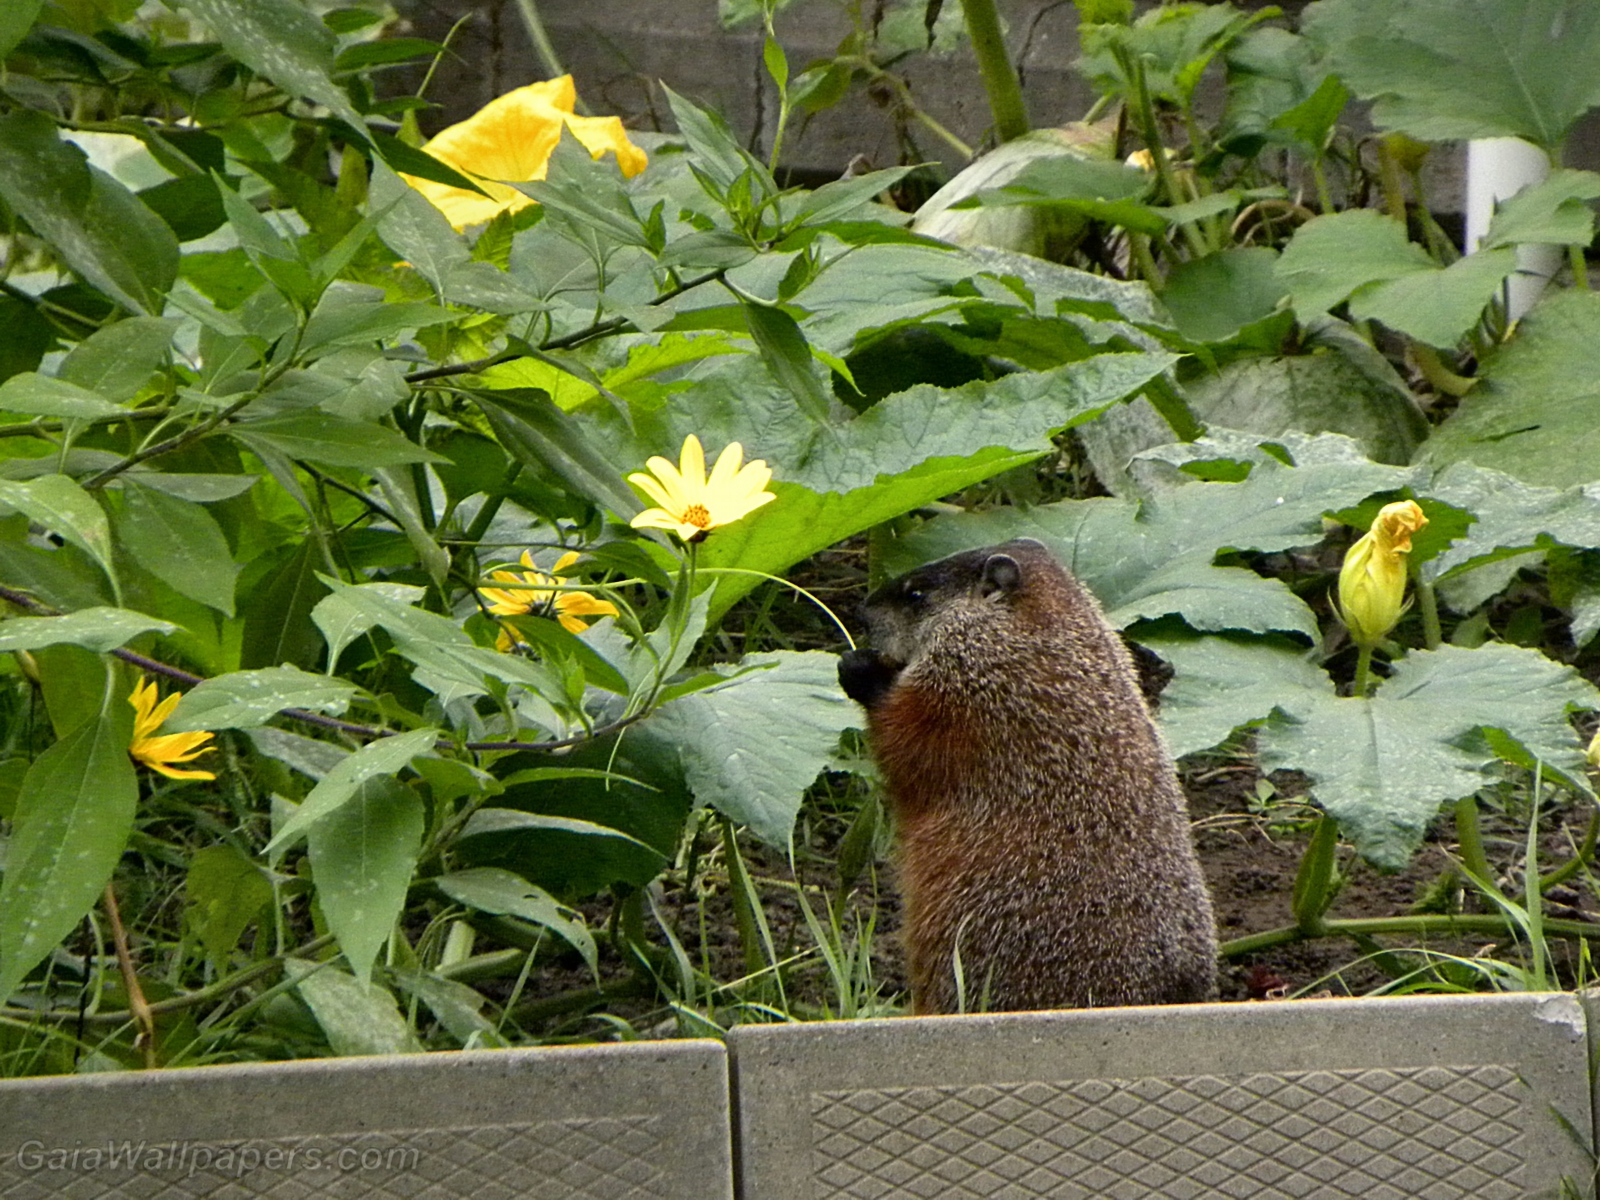 Marmot eating in the garden - Free desktop wallpapers